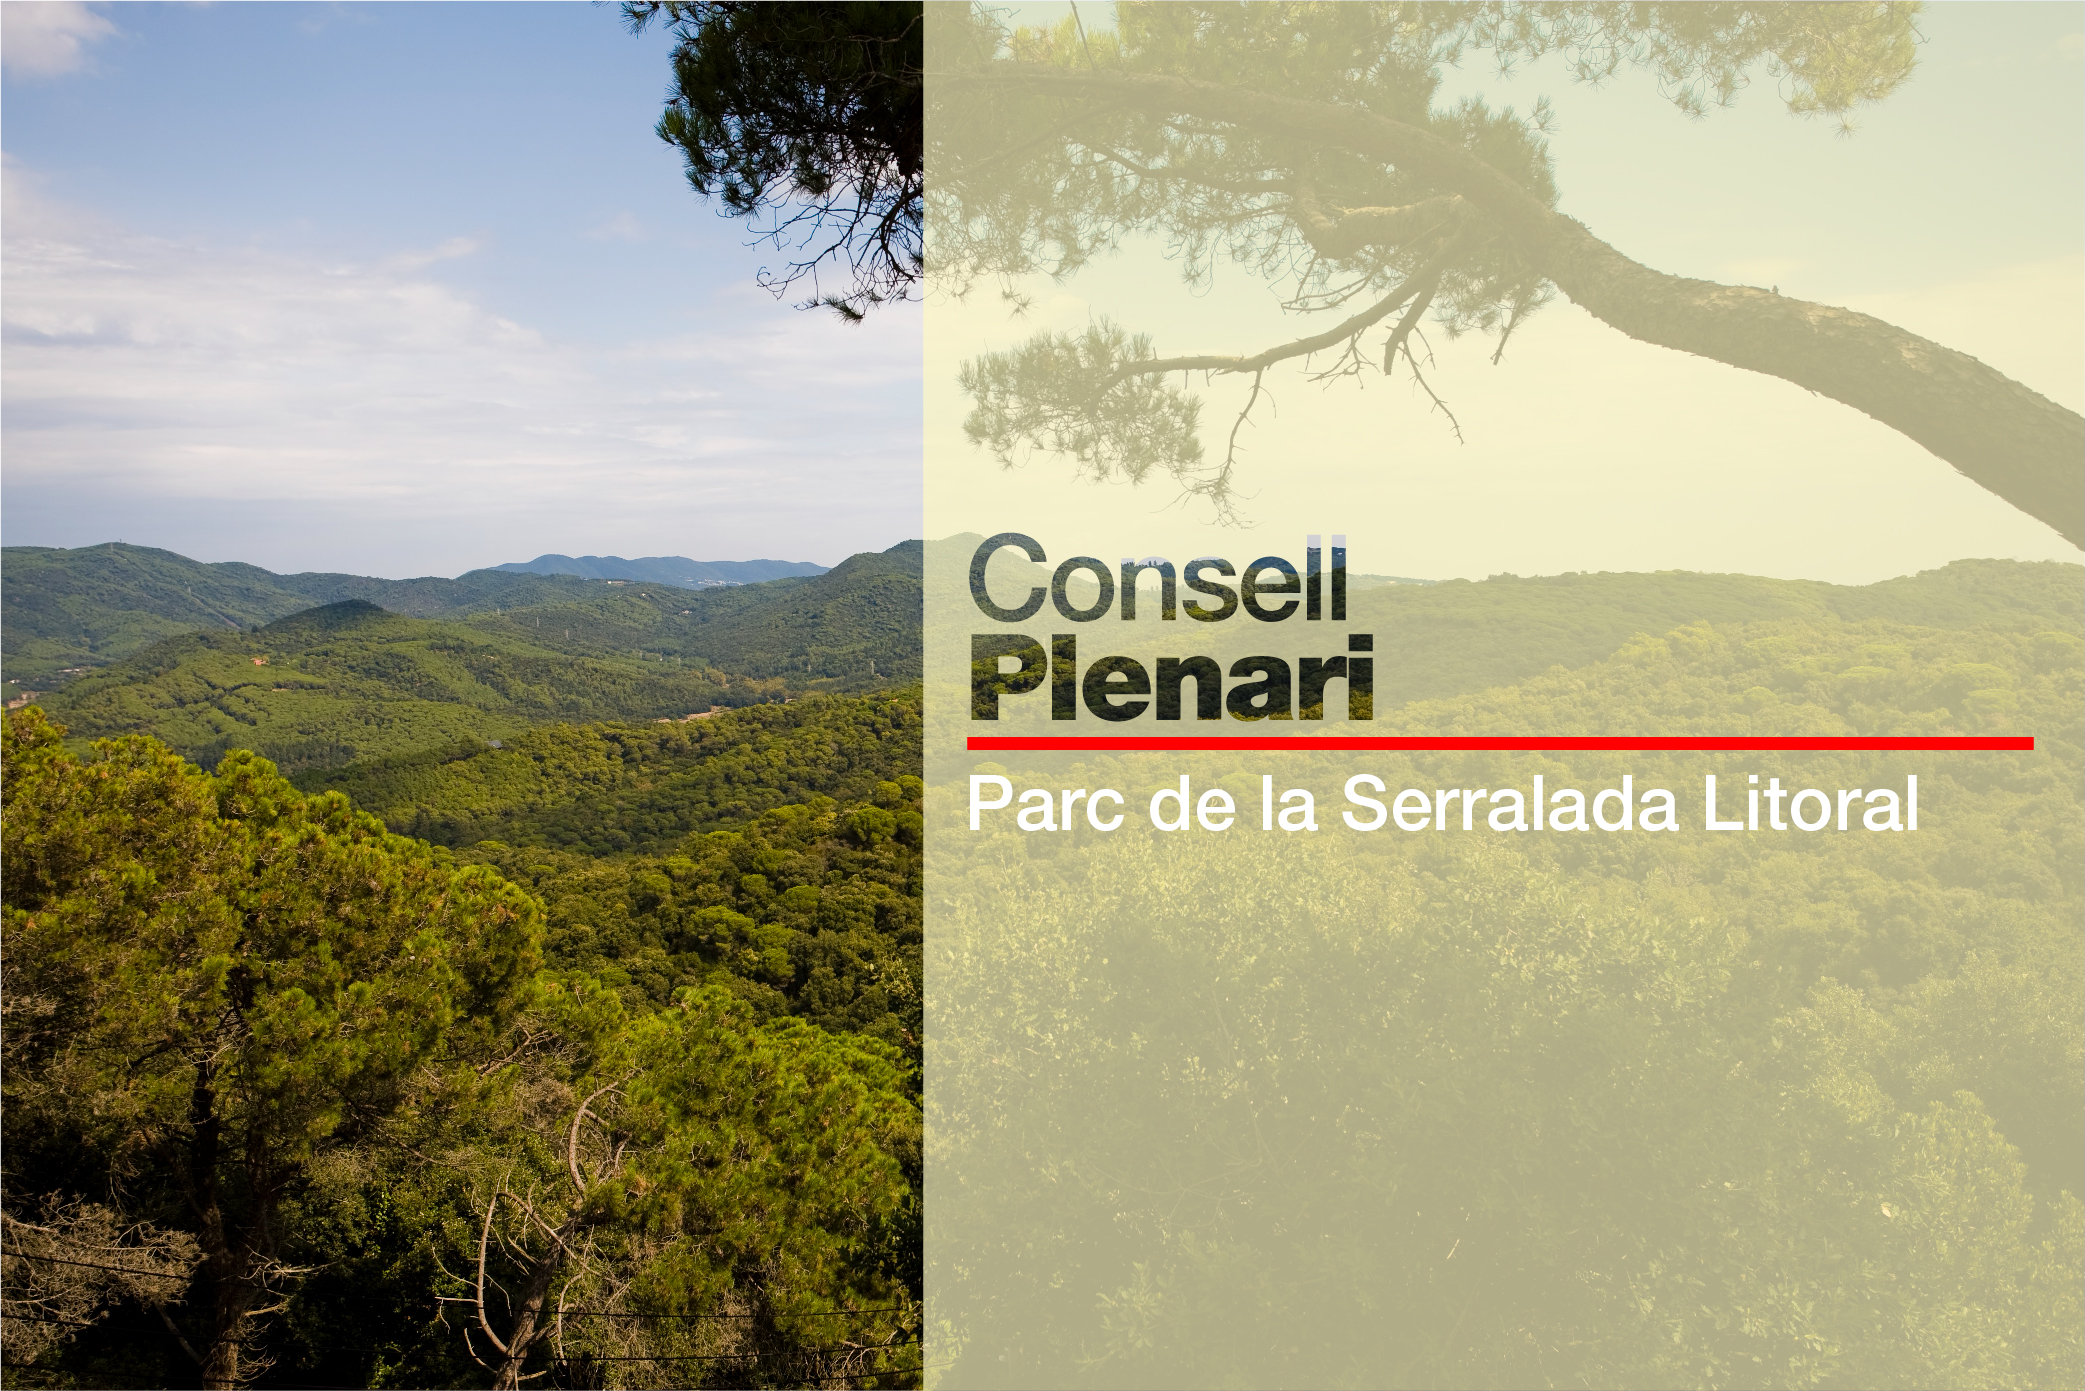 Consell Plenari del Consorci del Parc de la Serralada Litoral